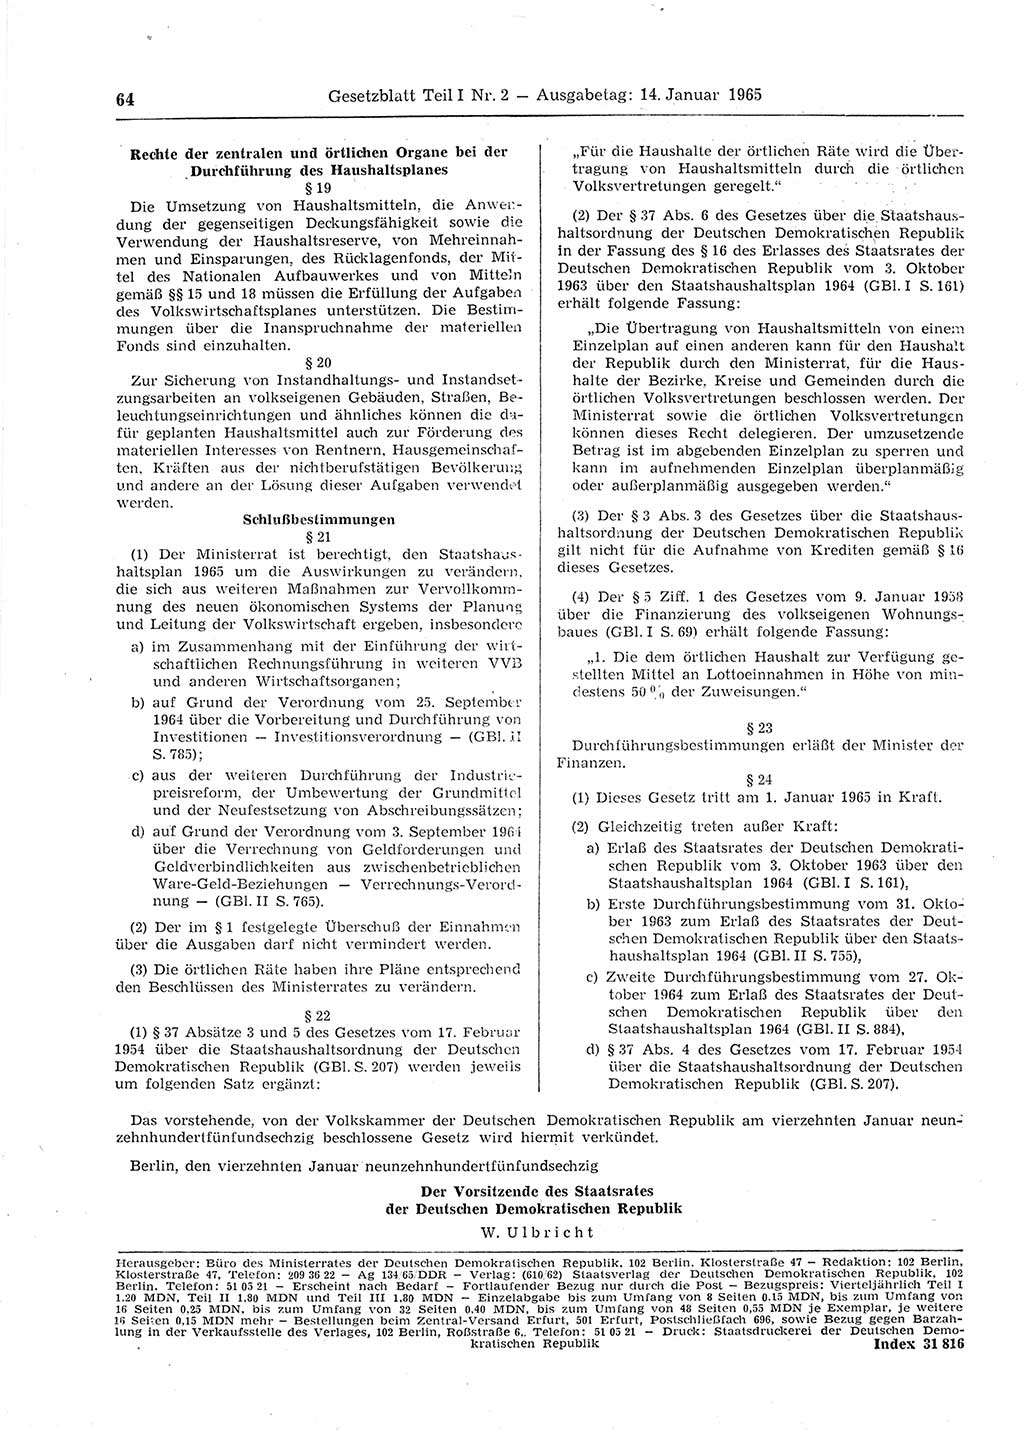 Gesetzblatt (GBl.) der Deutschen Demokratischen Republik (DDR) Teil Ⅰ 1965, Seite 64 (GBl. DDR Ⅰ 1965, S. 64)